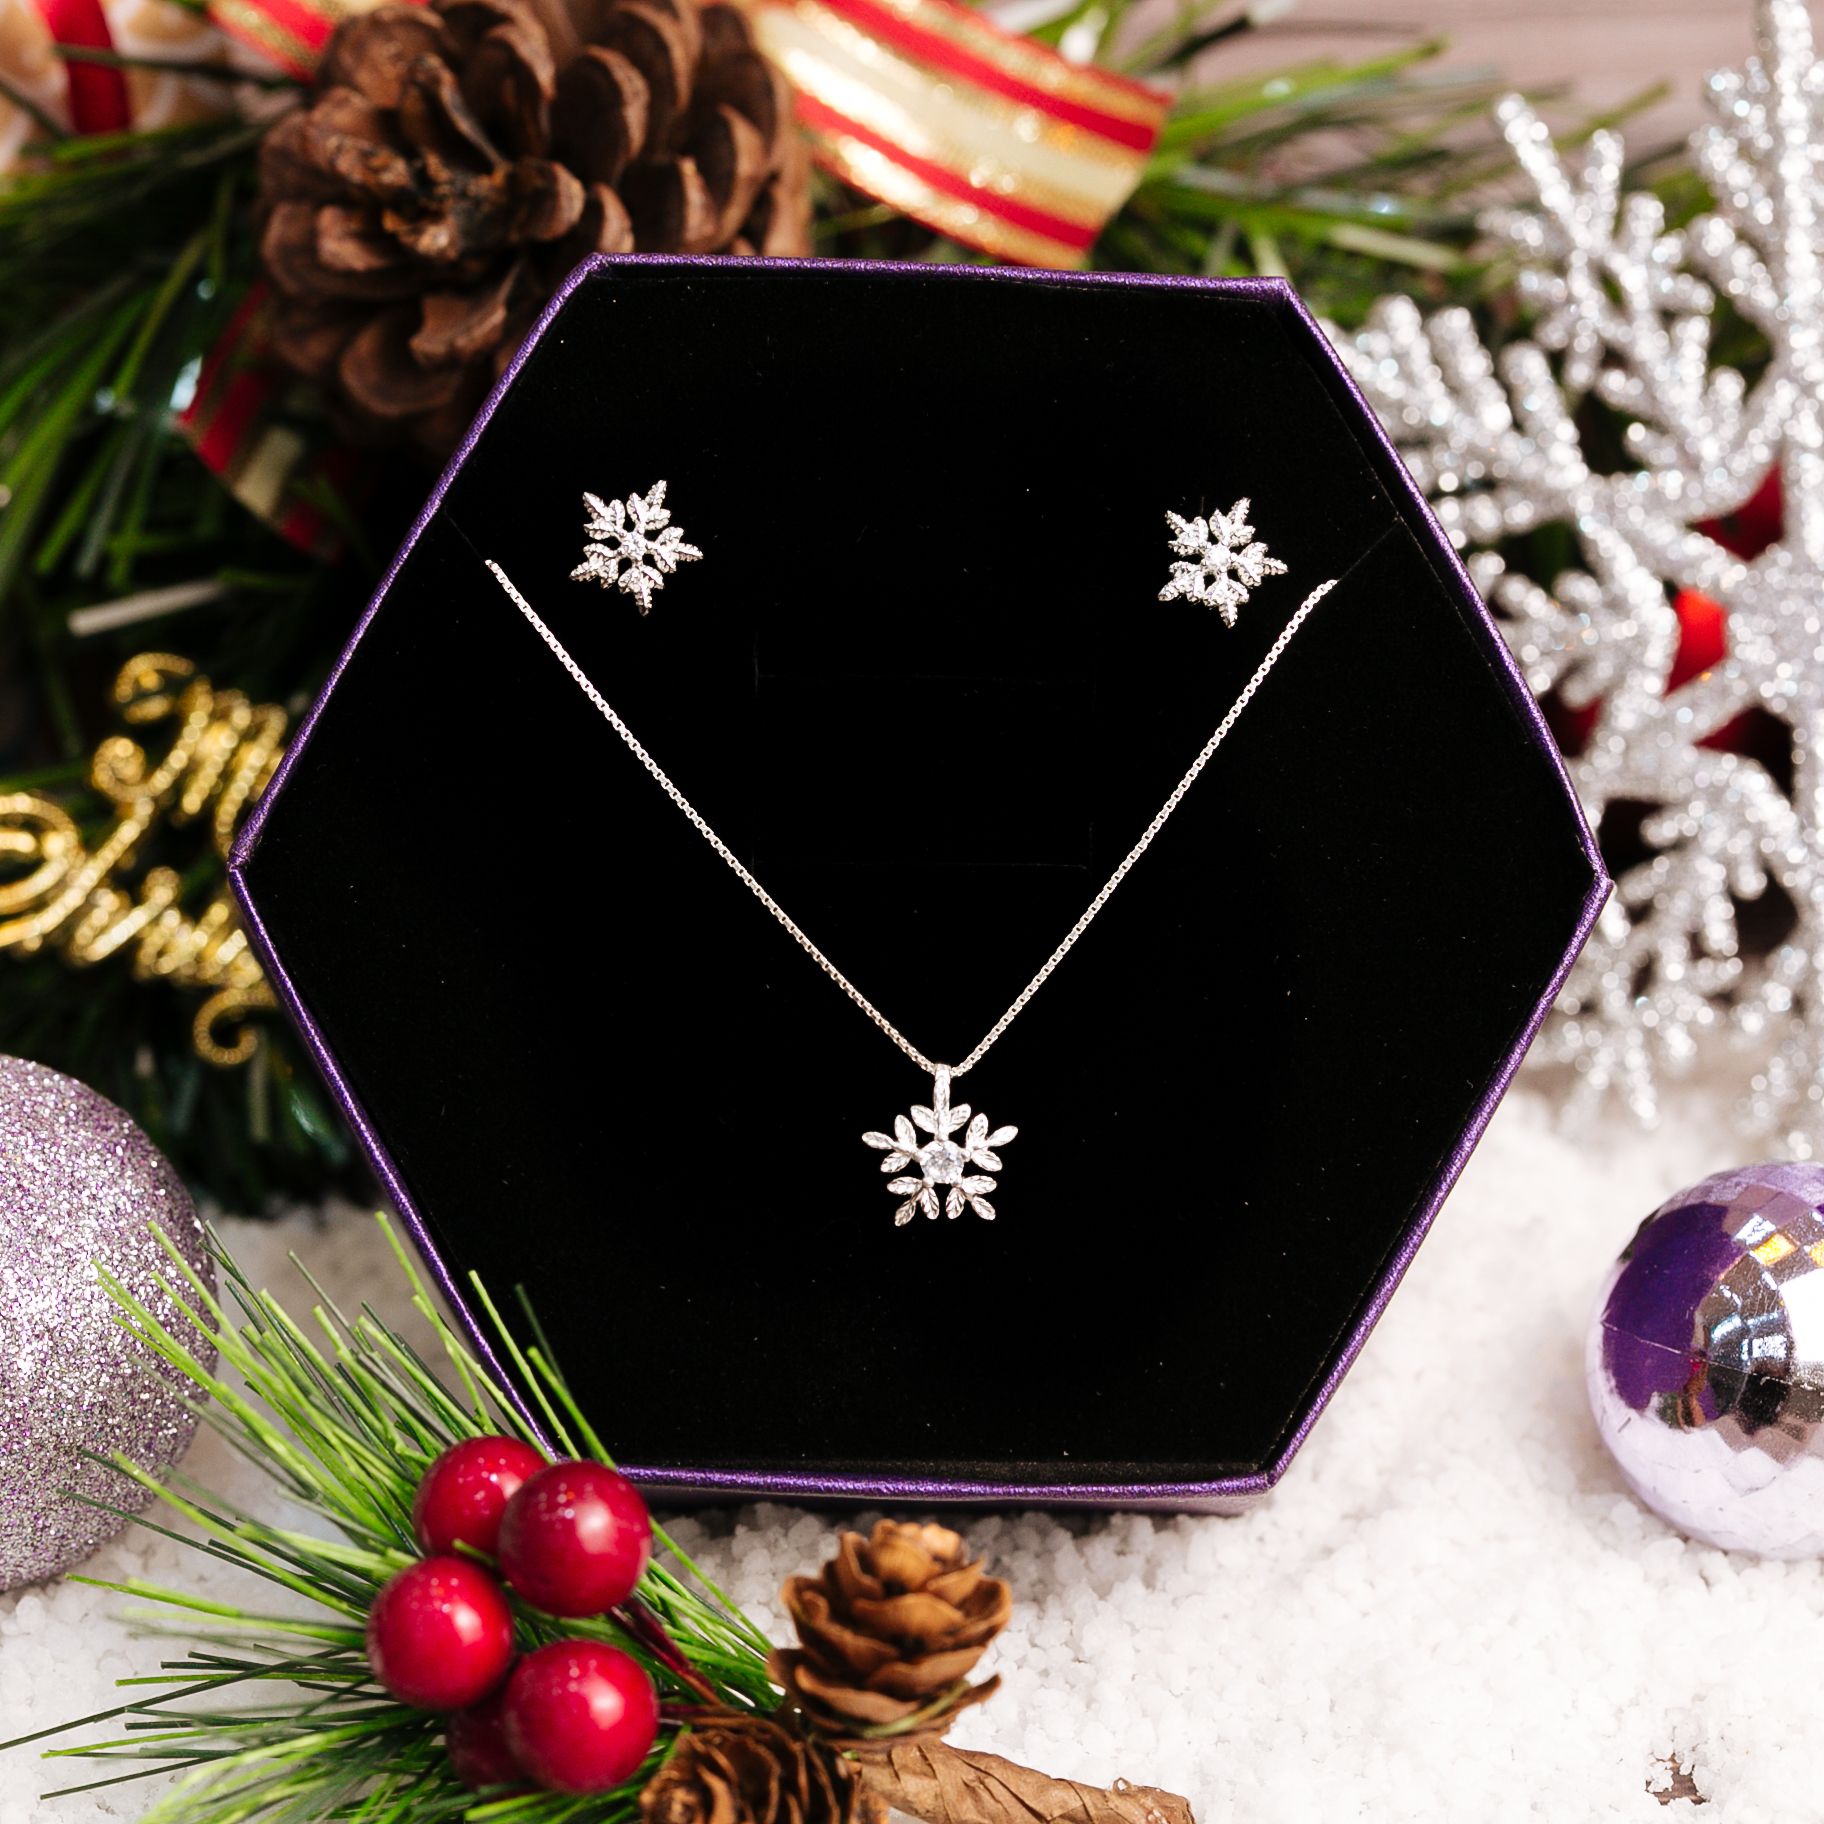  Snowflake Christmas Gift Jewelry Set - Bộ Trang Sức Hoa Tuyết Trơn Đính 1 Viên Đá CZ - Quà Tặng Giáng Sinh 